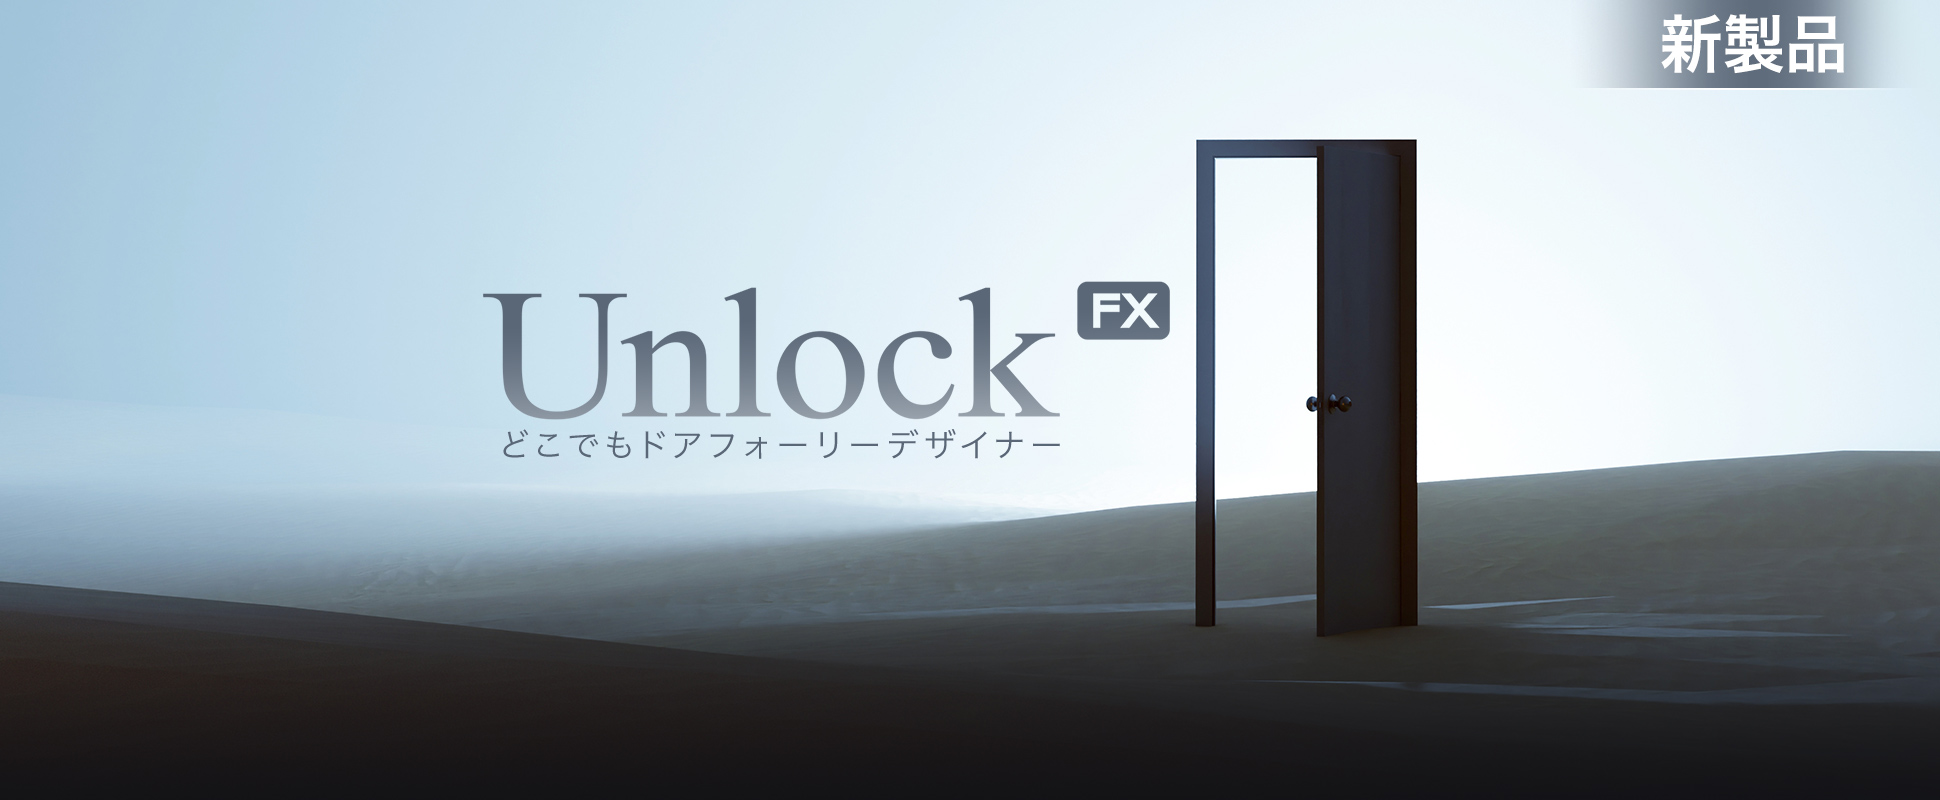 New - Unlock - Juillet 2023